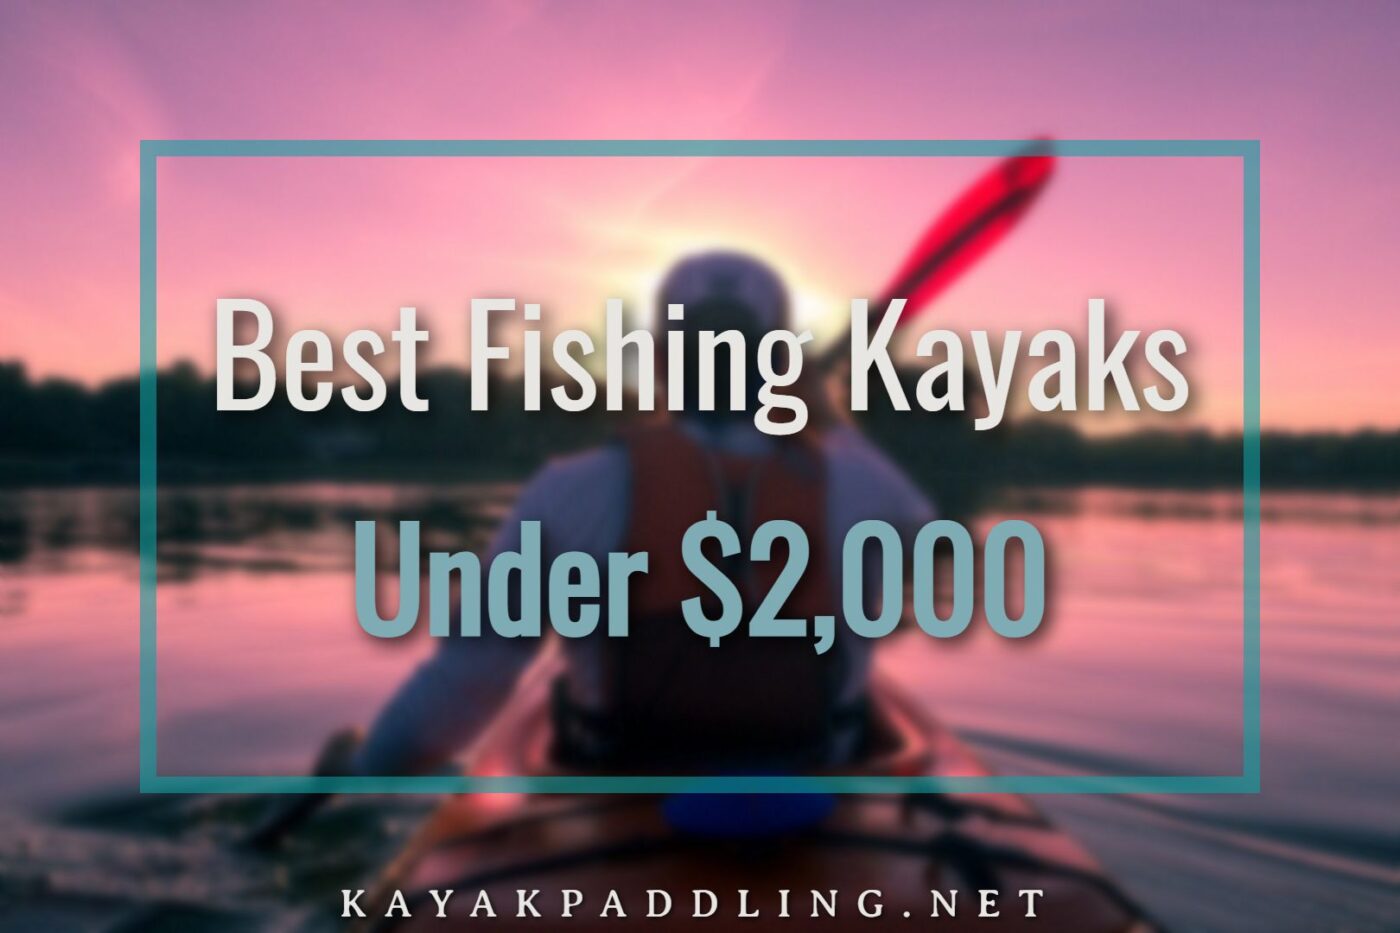 Los mejores kayaks de pesca por menos de $ 2,000